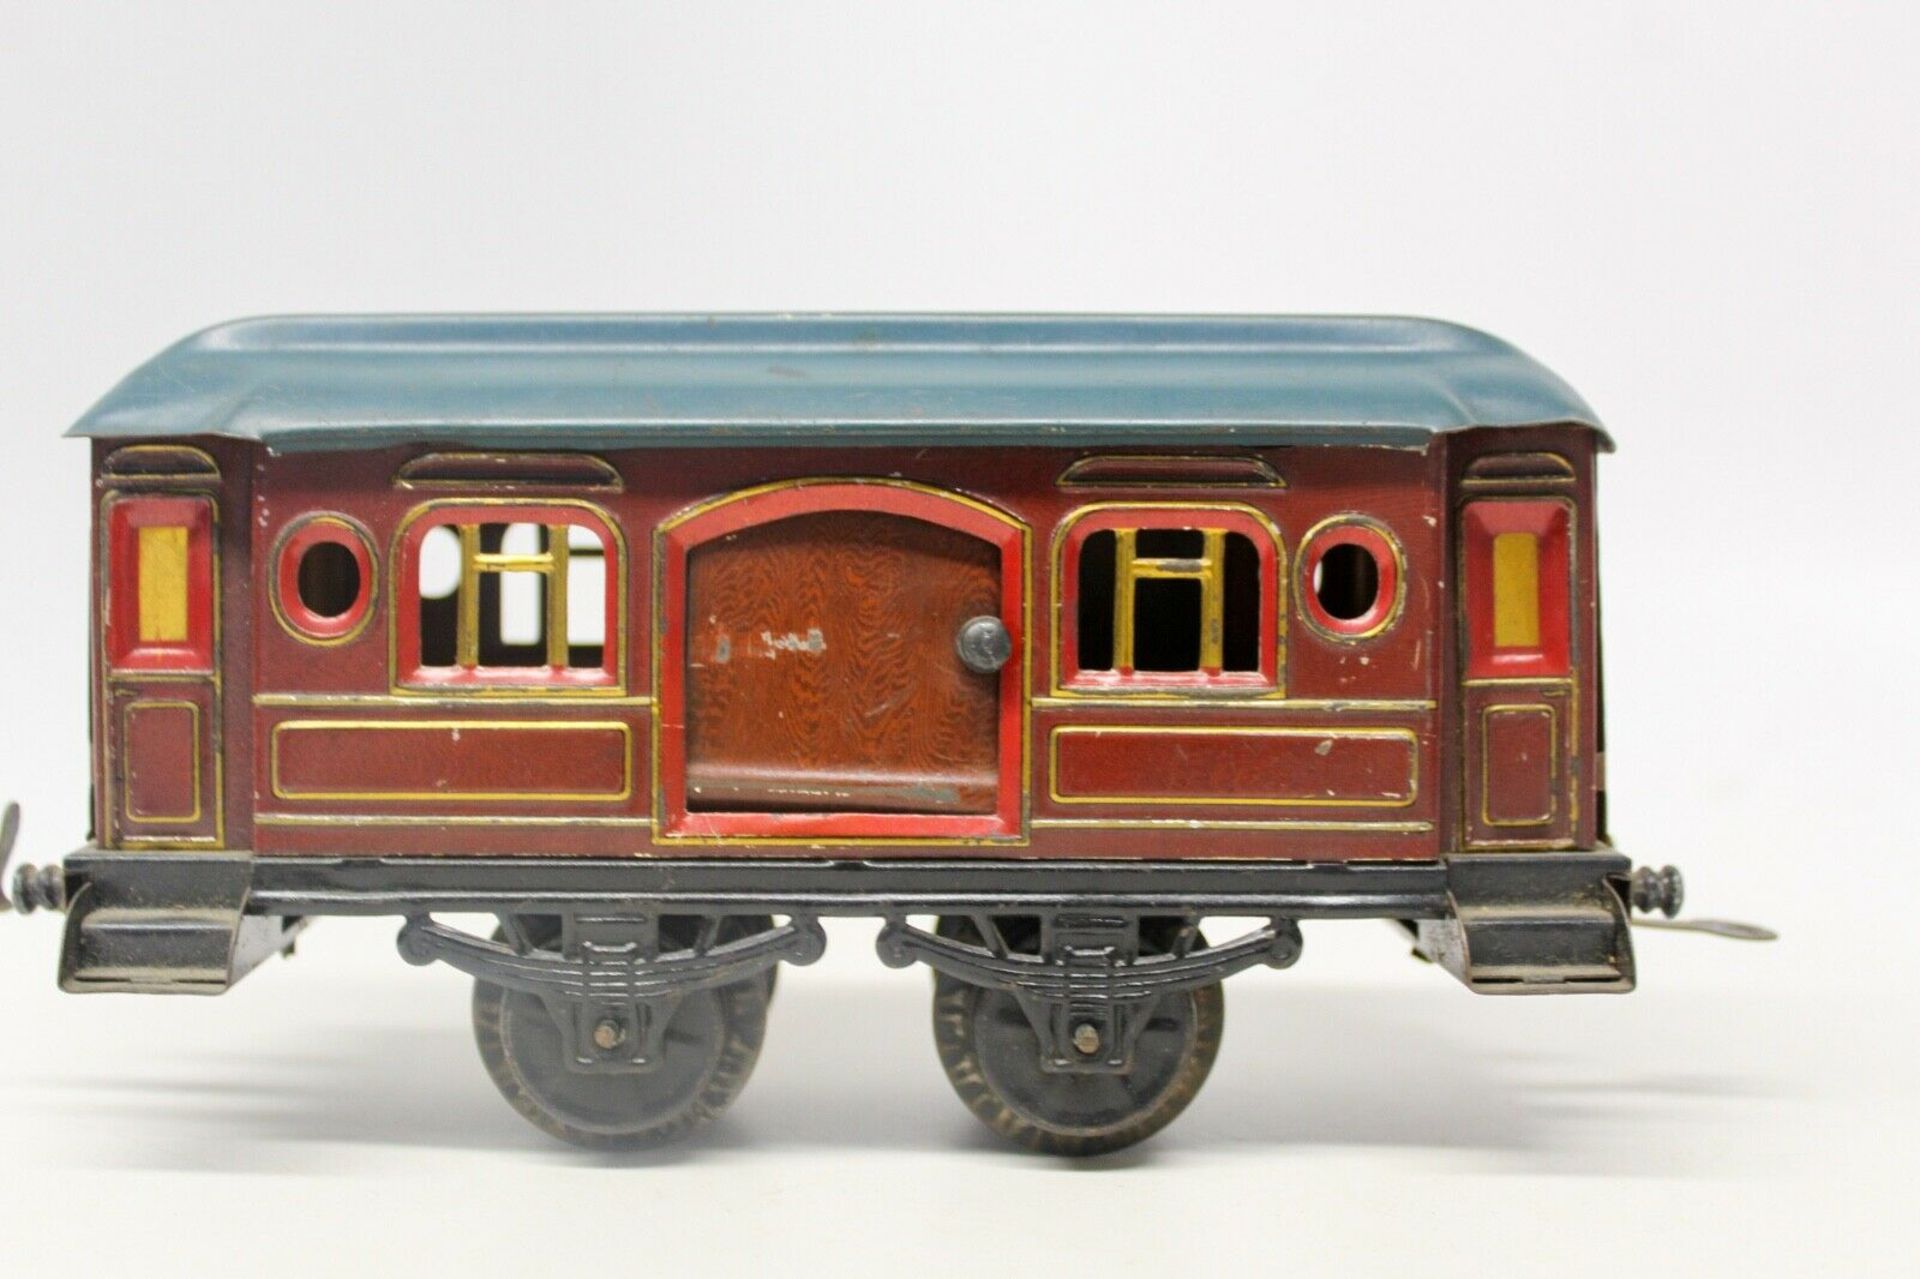 Karl Bub (KBN) Clockwork 0-Gauge Locomotive Vintage Large Passenger Train Set Tin Lithograp Large - Image 4 of 5